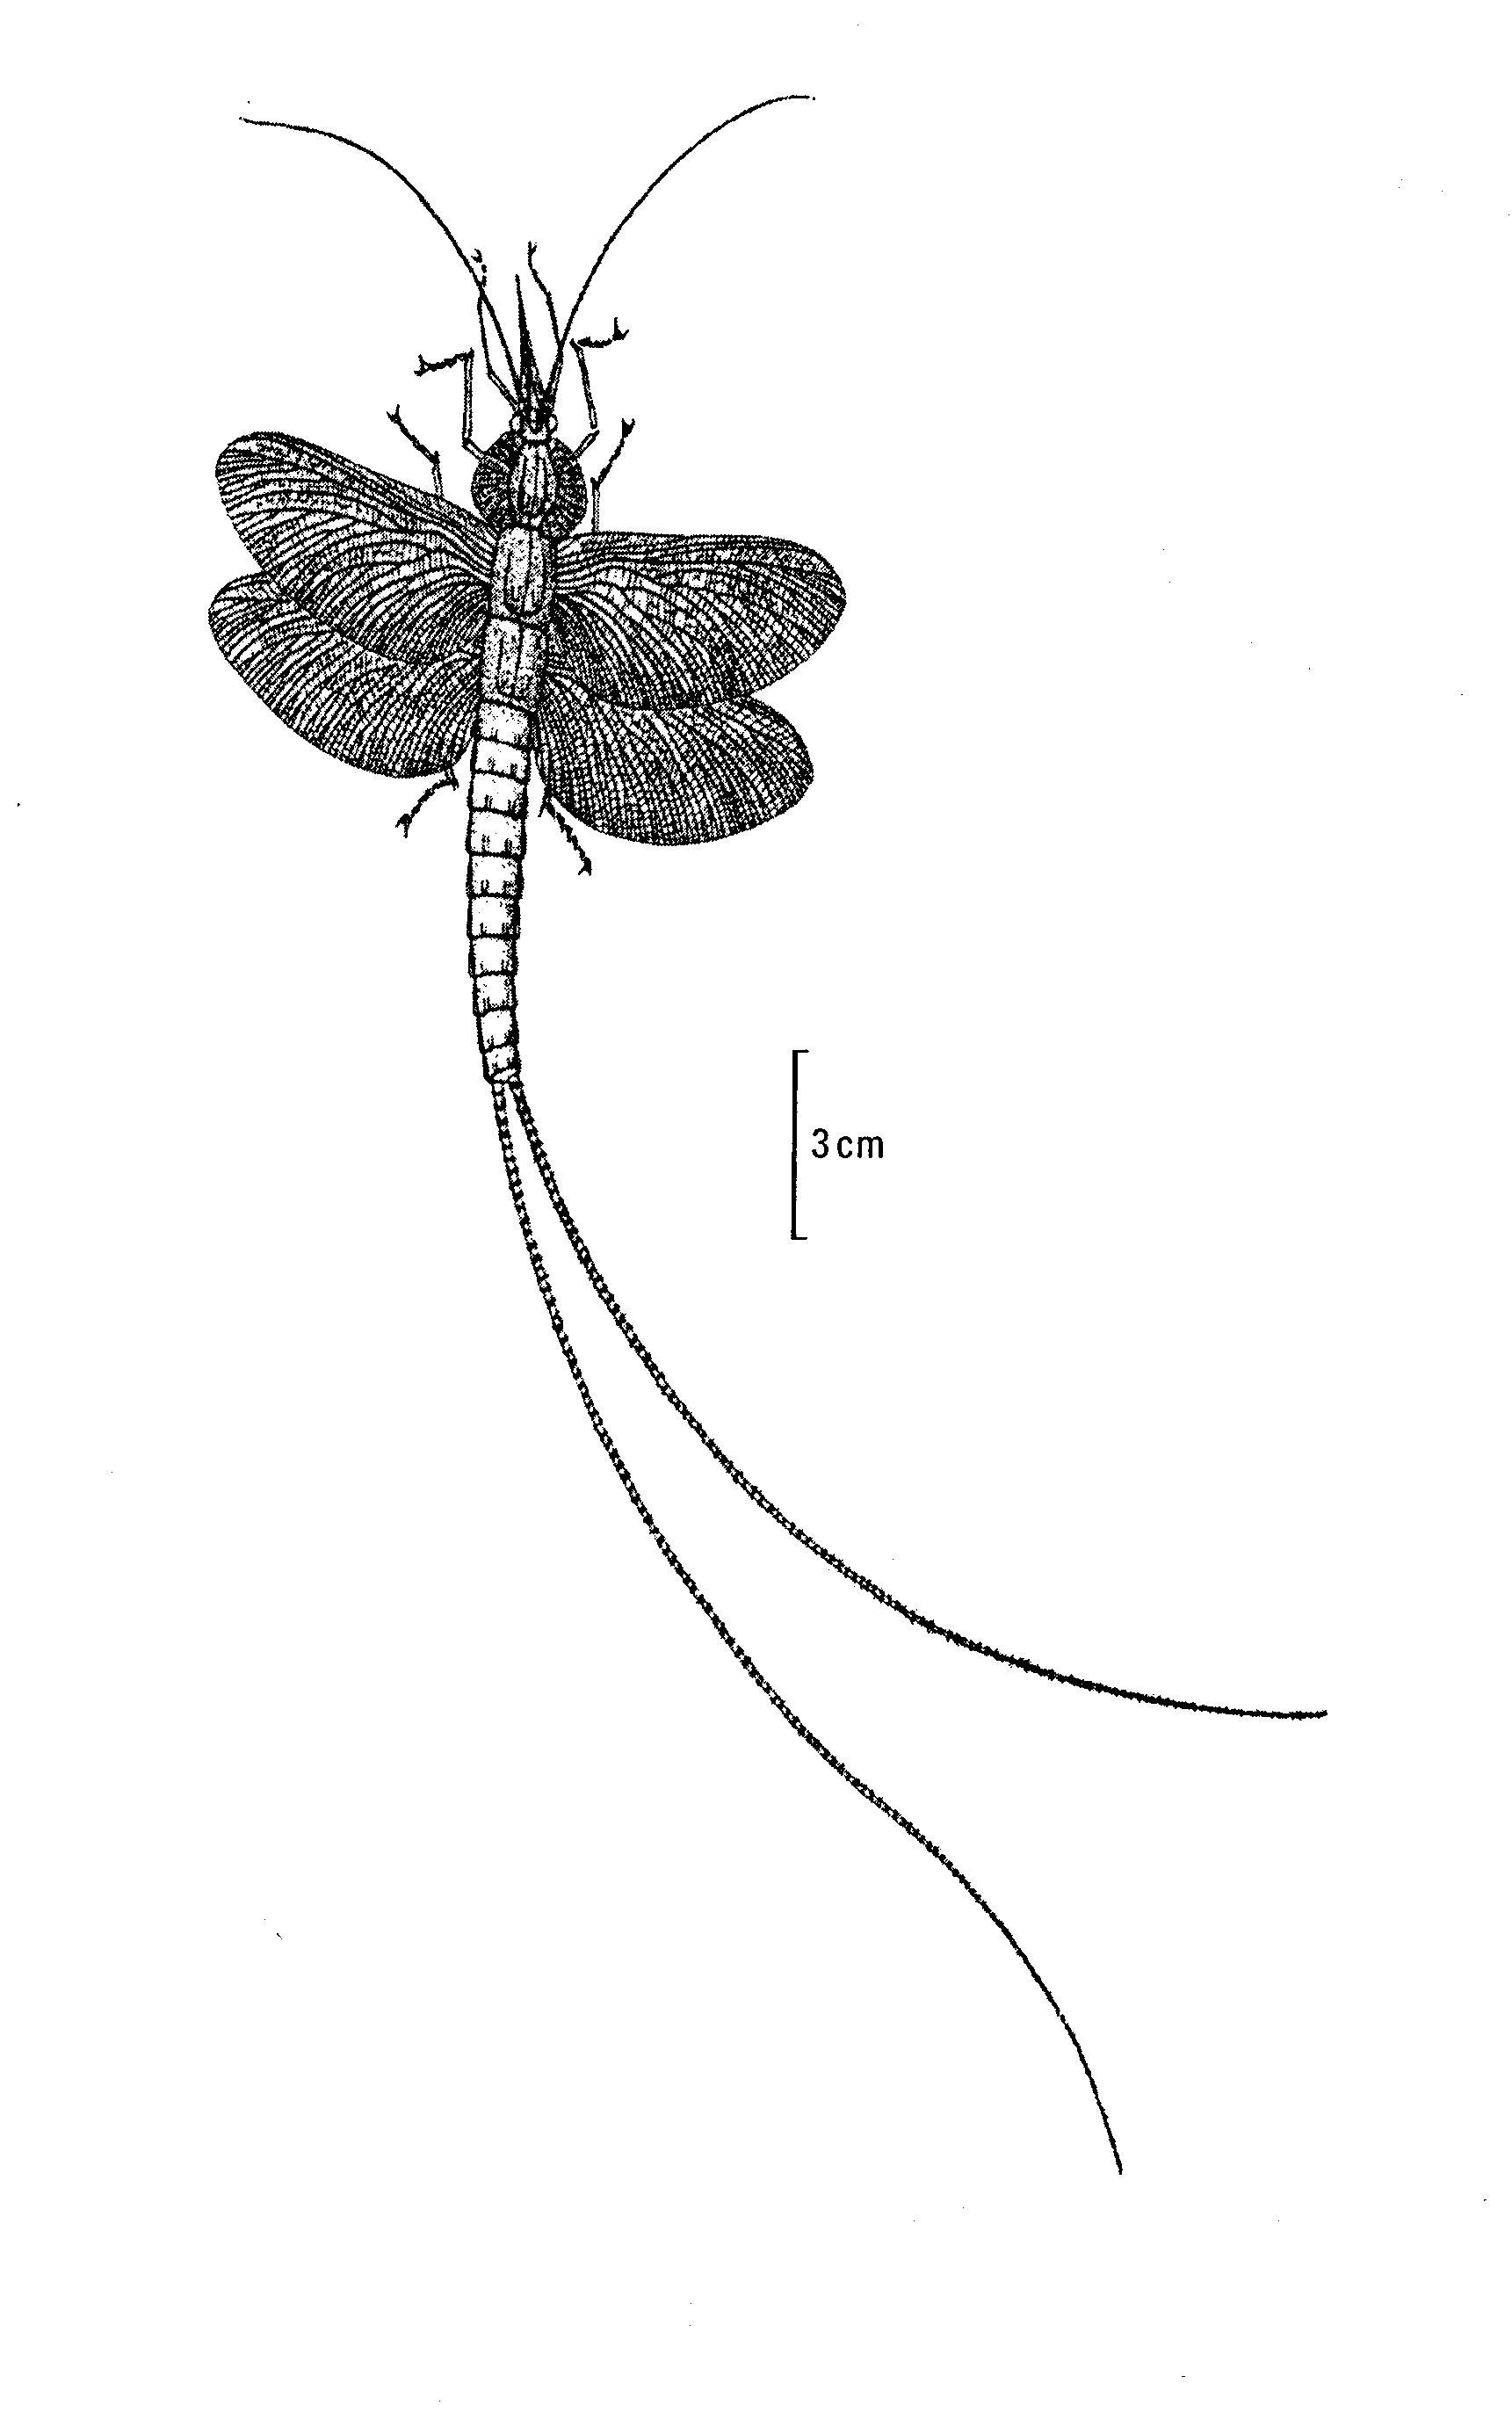 Zeichung eines Insekts mit vier rundlichen Flügeln und langem Schwanz